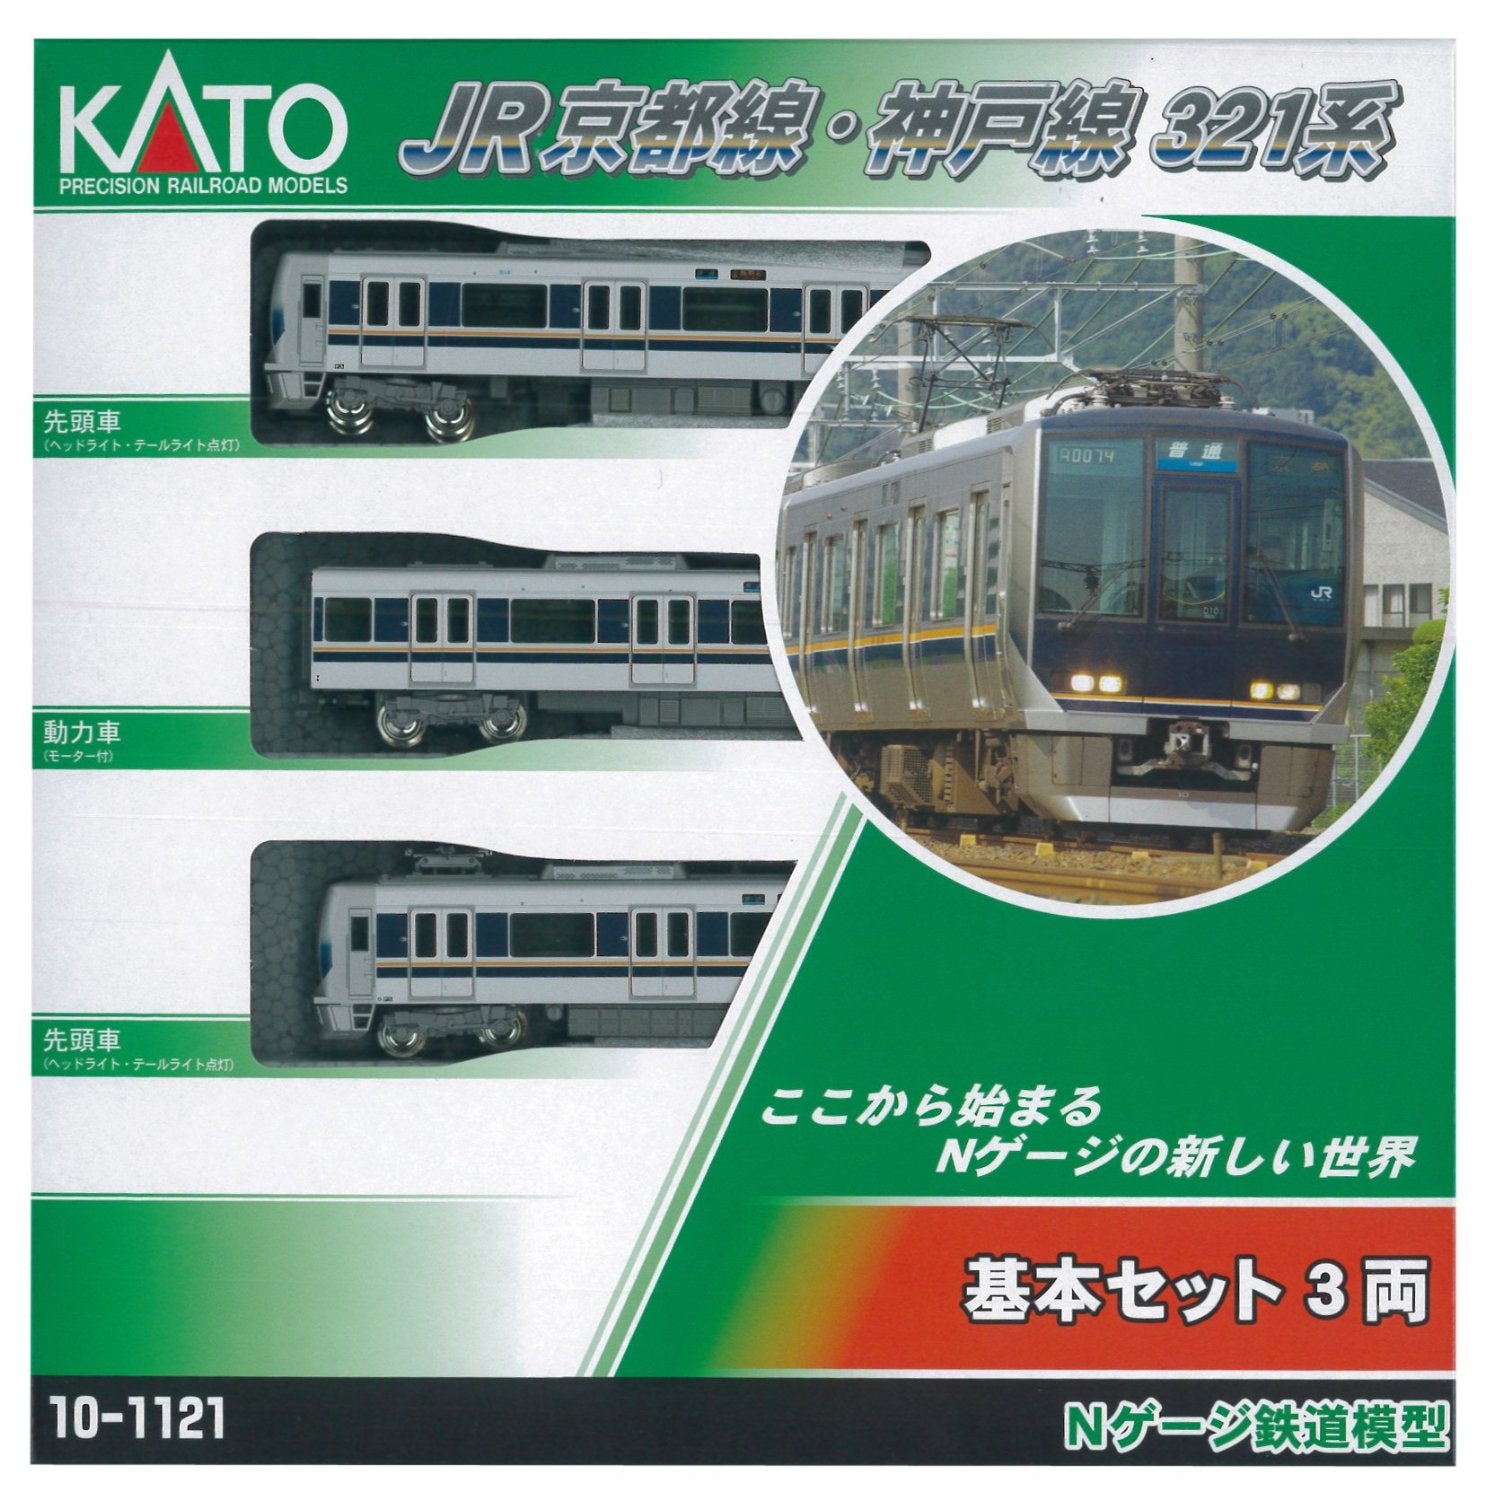 10-1121 Series 321 JR Kyoto Line, Kobe Line Basic 3-Car Set